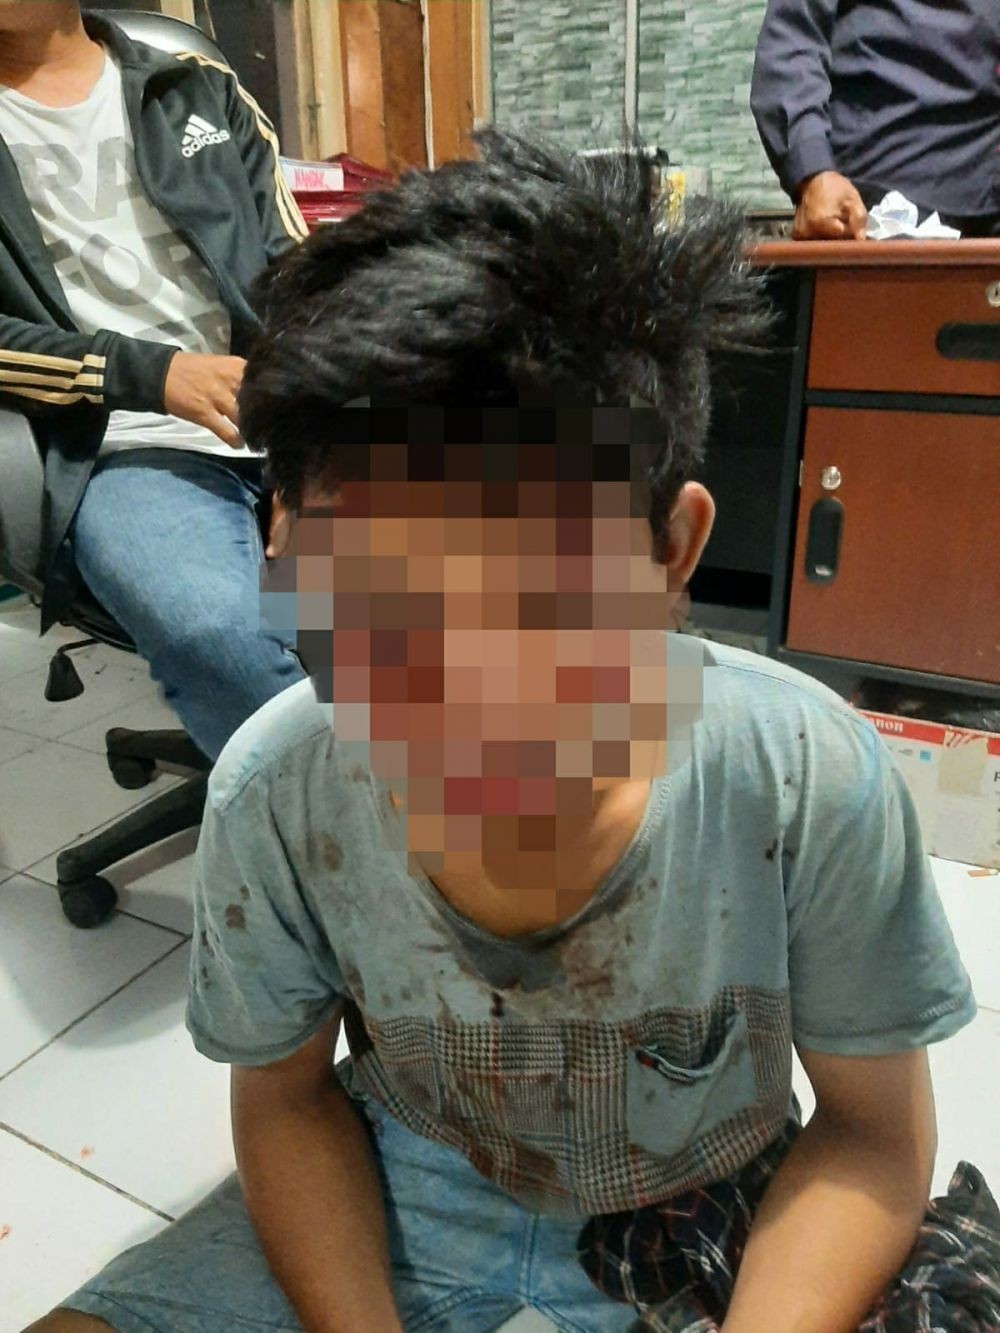 Sempat Duel, Korban Tendang Pencuri Motor di Lombok Hingga Jatuh